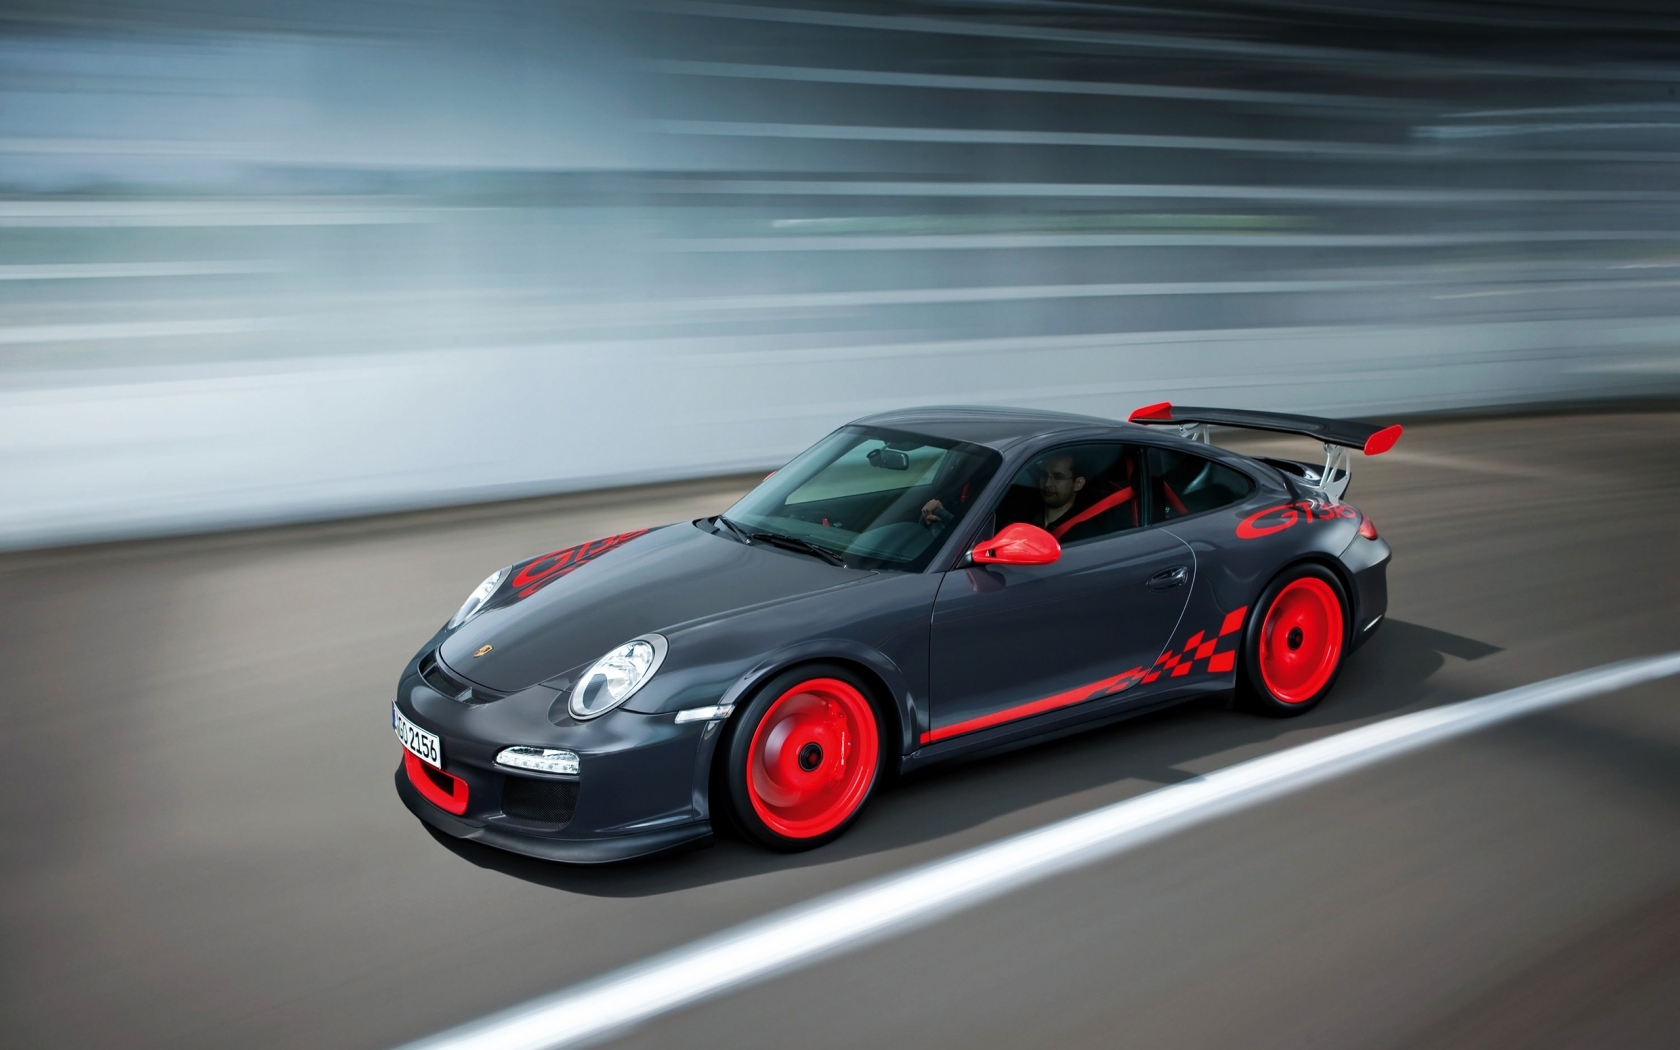 Porsche 911 GT3 RS for 1680 x 1050 widescreen resolution